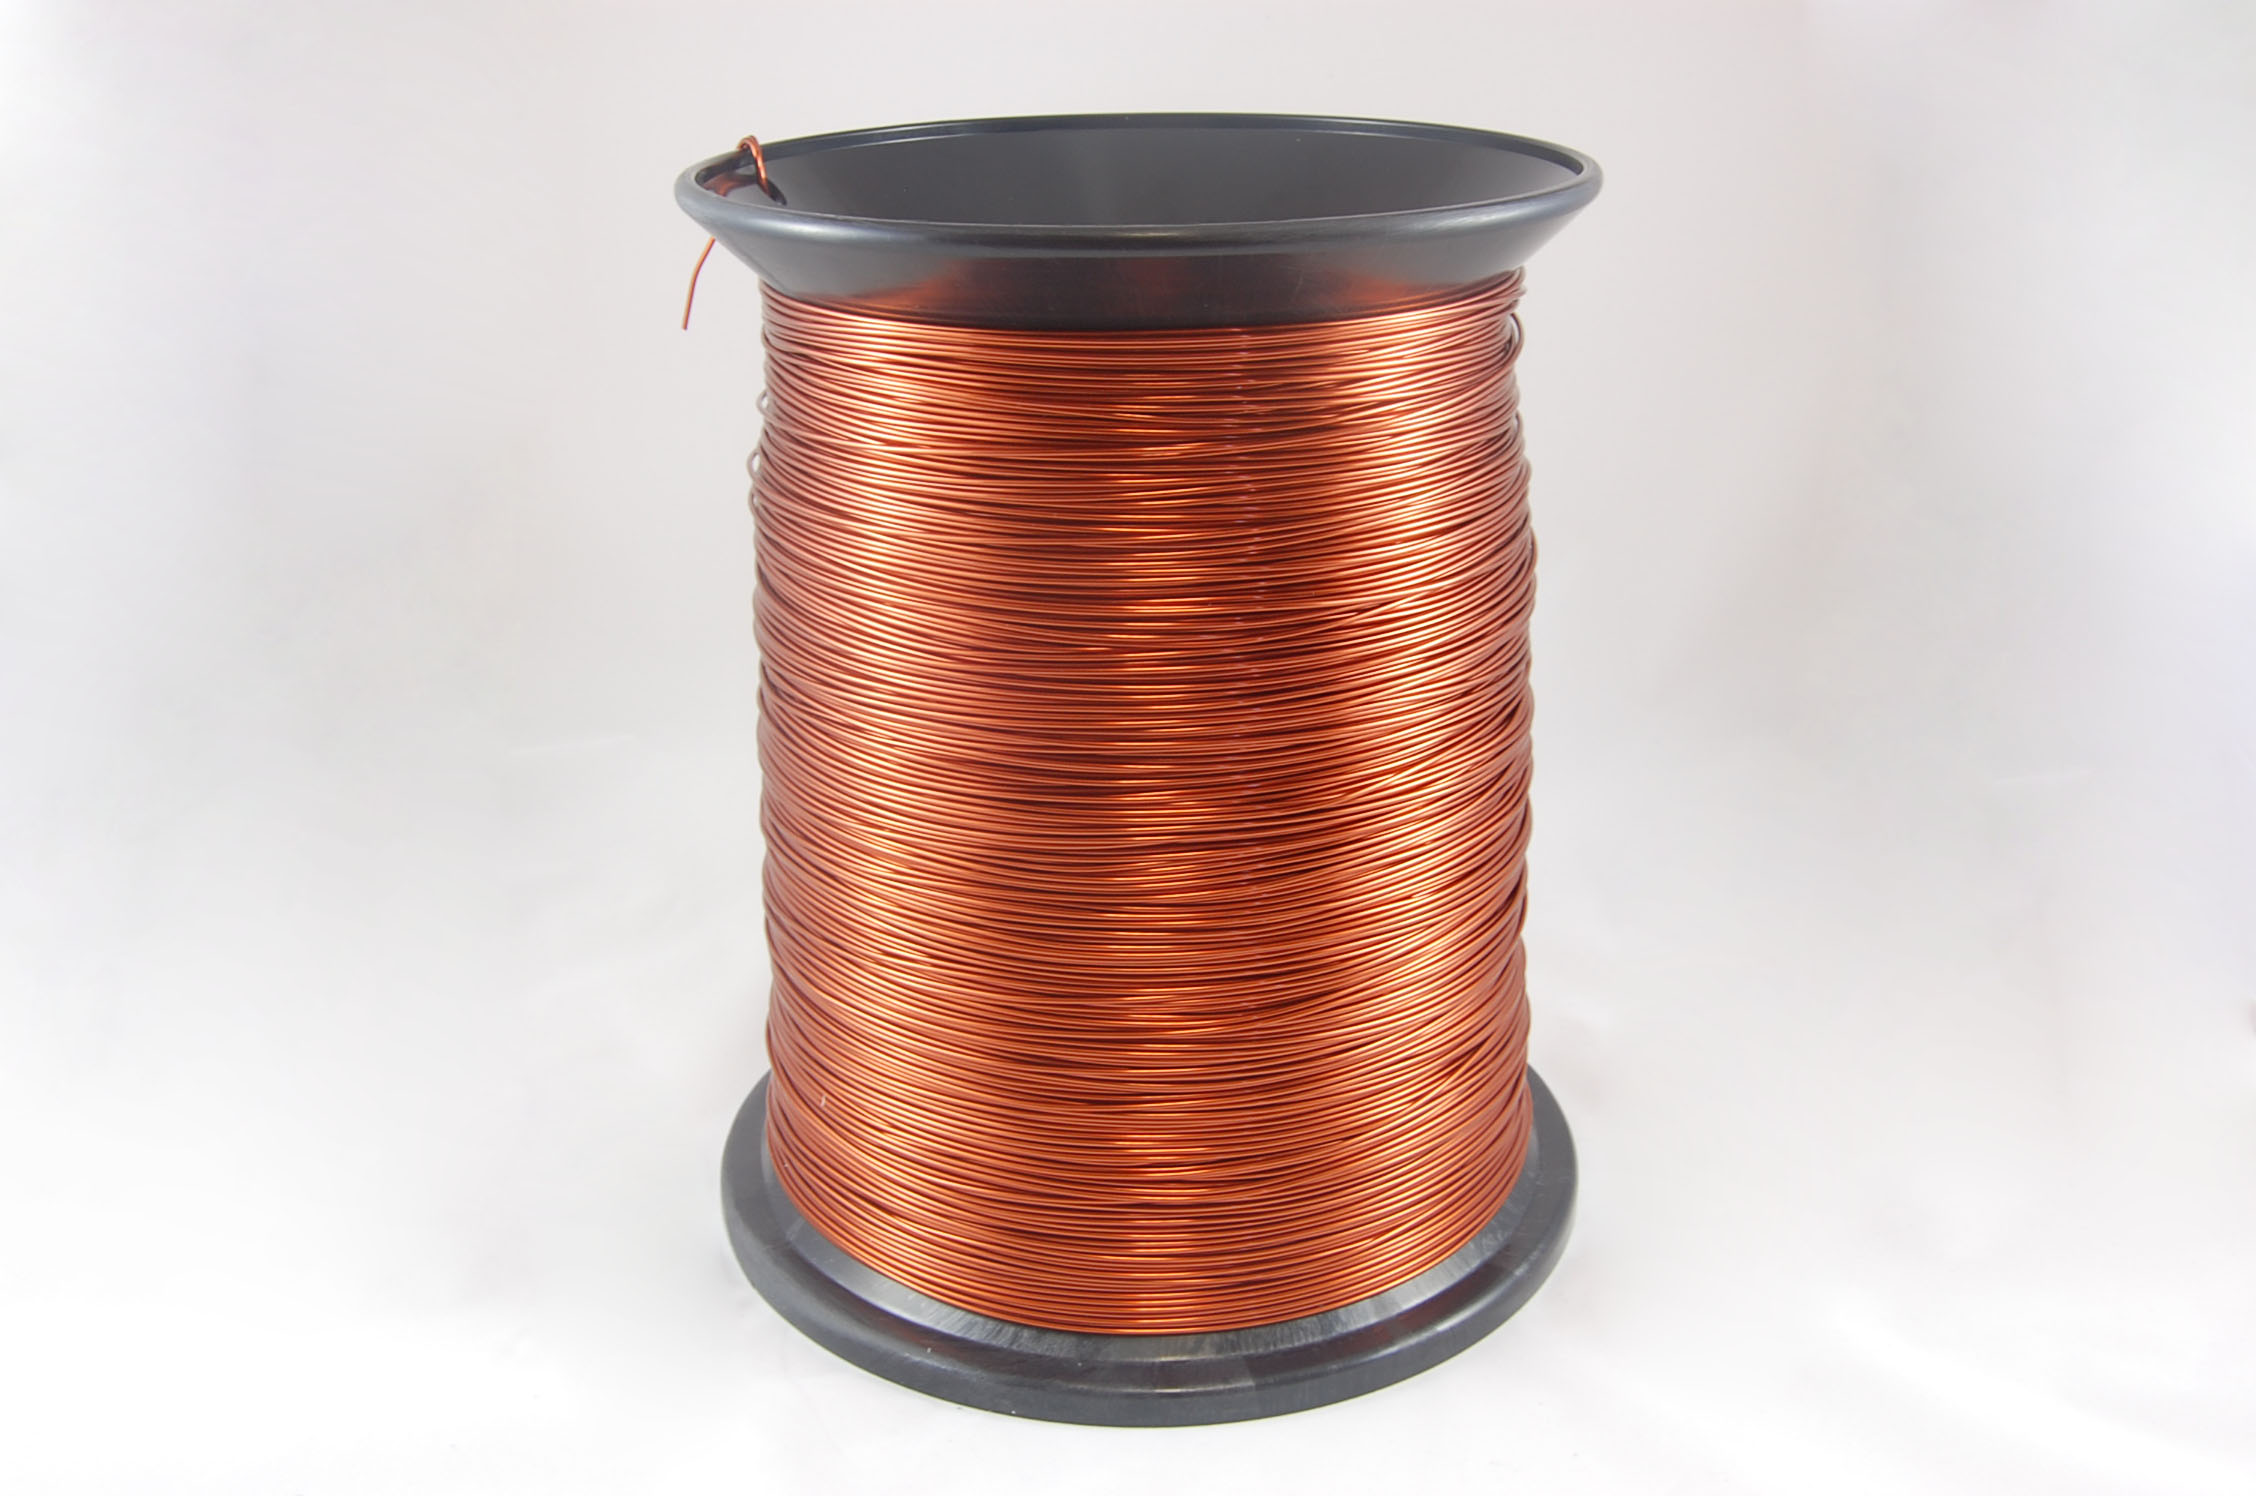 #19 Heavy GP/MR-200 Round MW 35 Copper Magnet Wire 200°C, copper, 85 LB pail (average wght.)